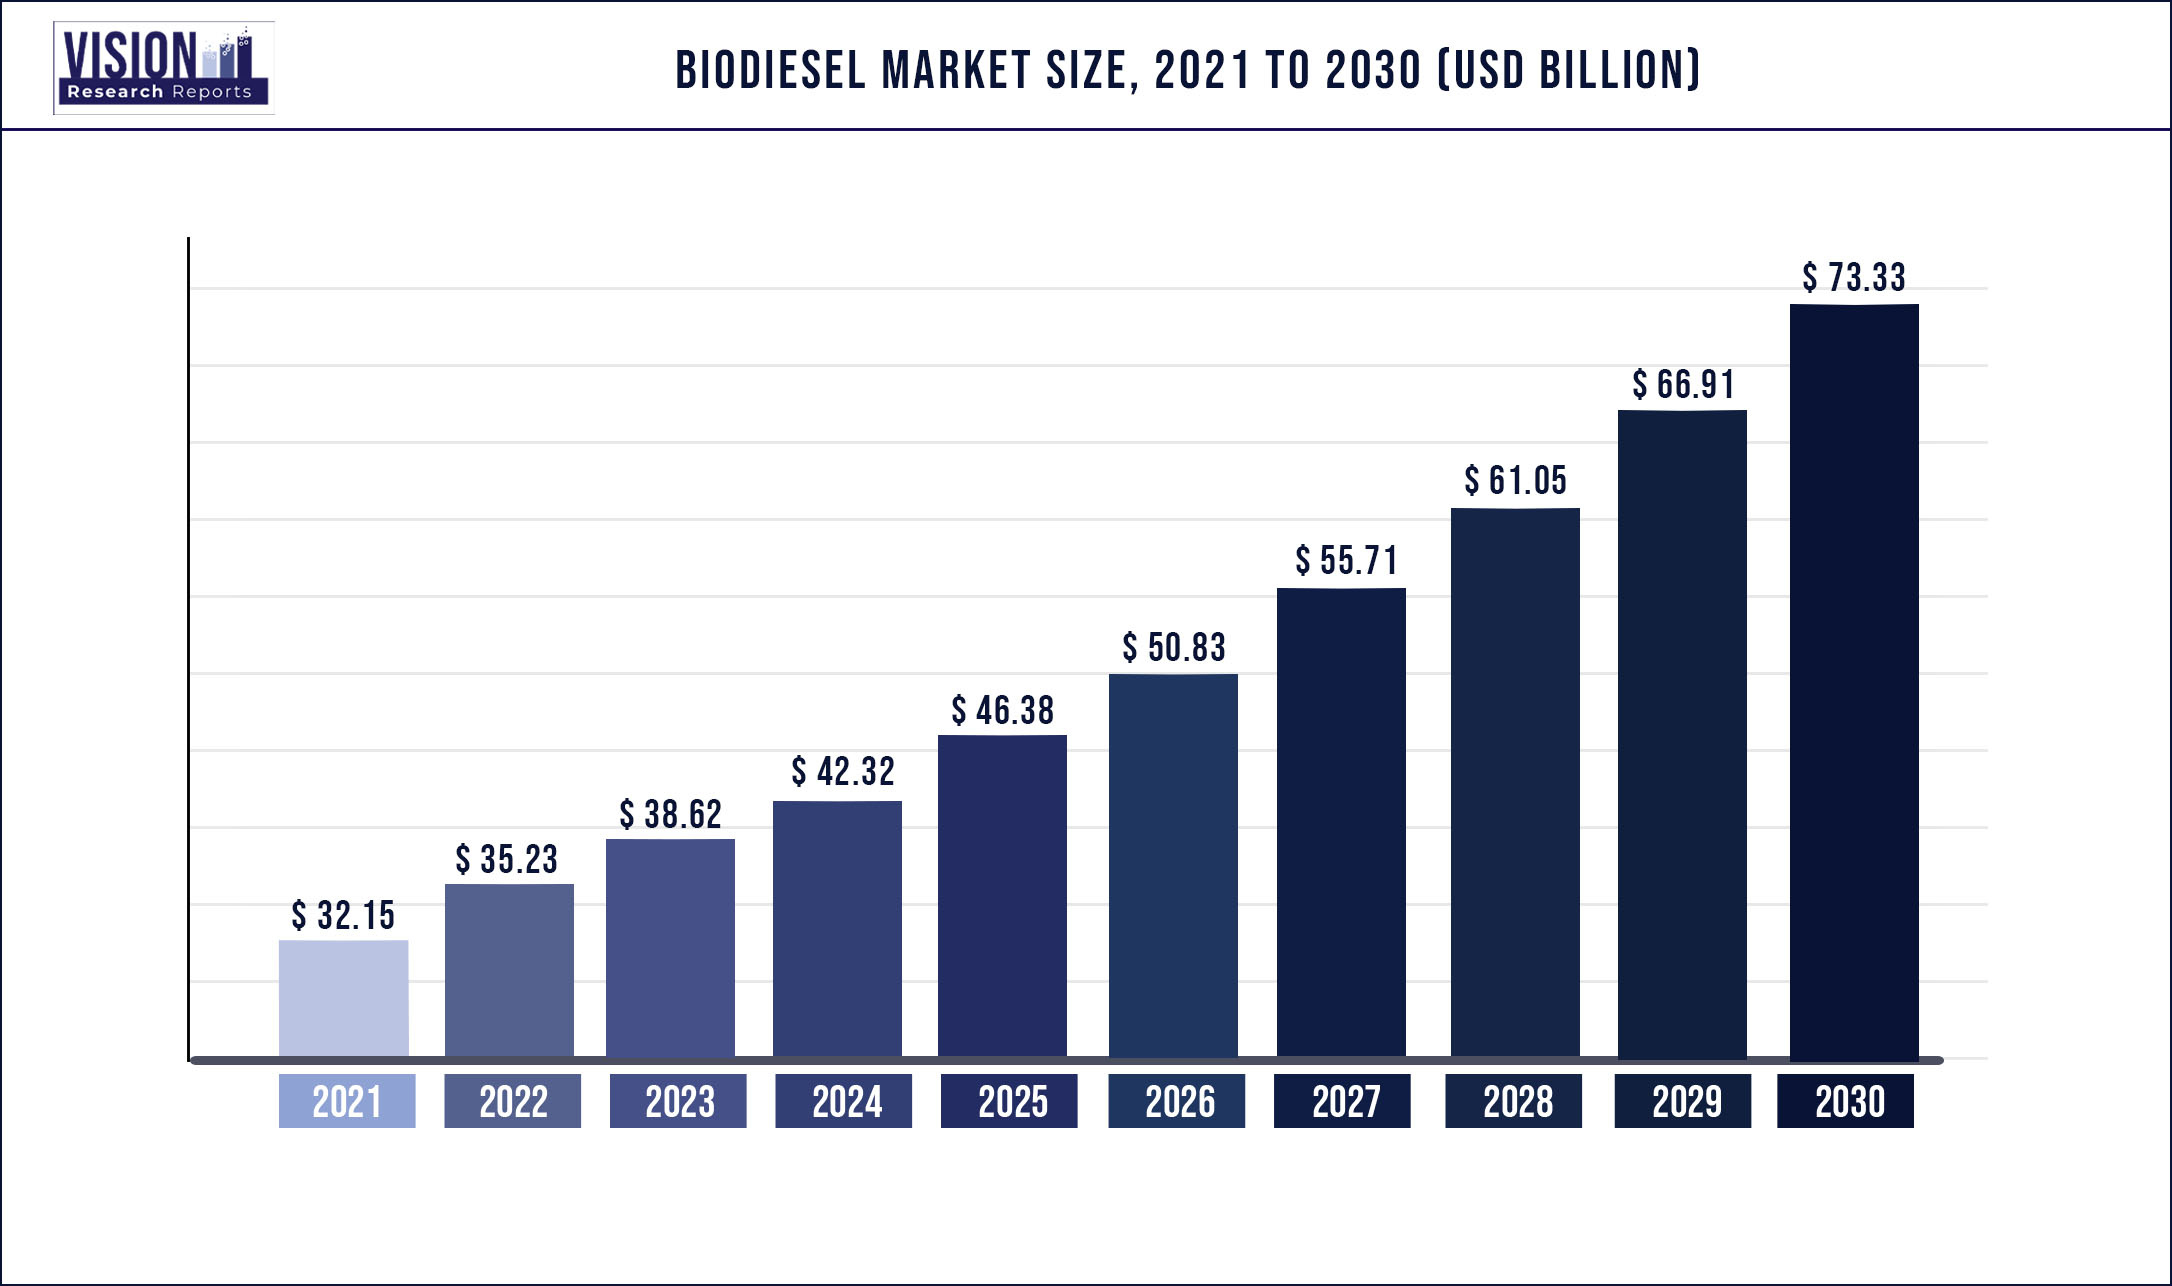 Biodiesel Market Size 2021 to 2030